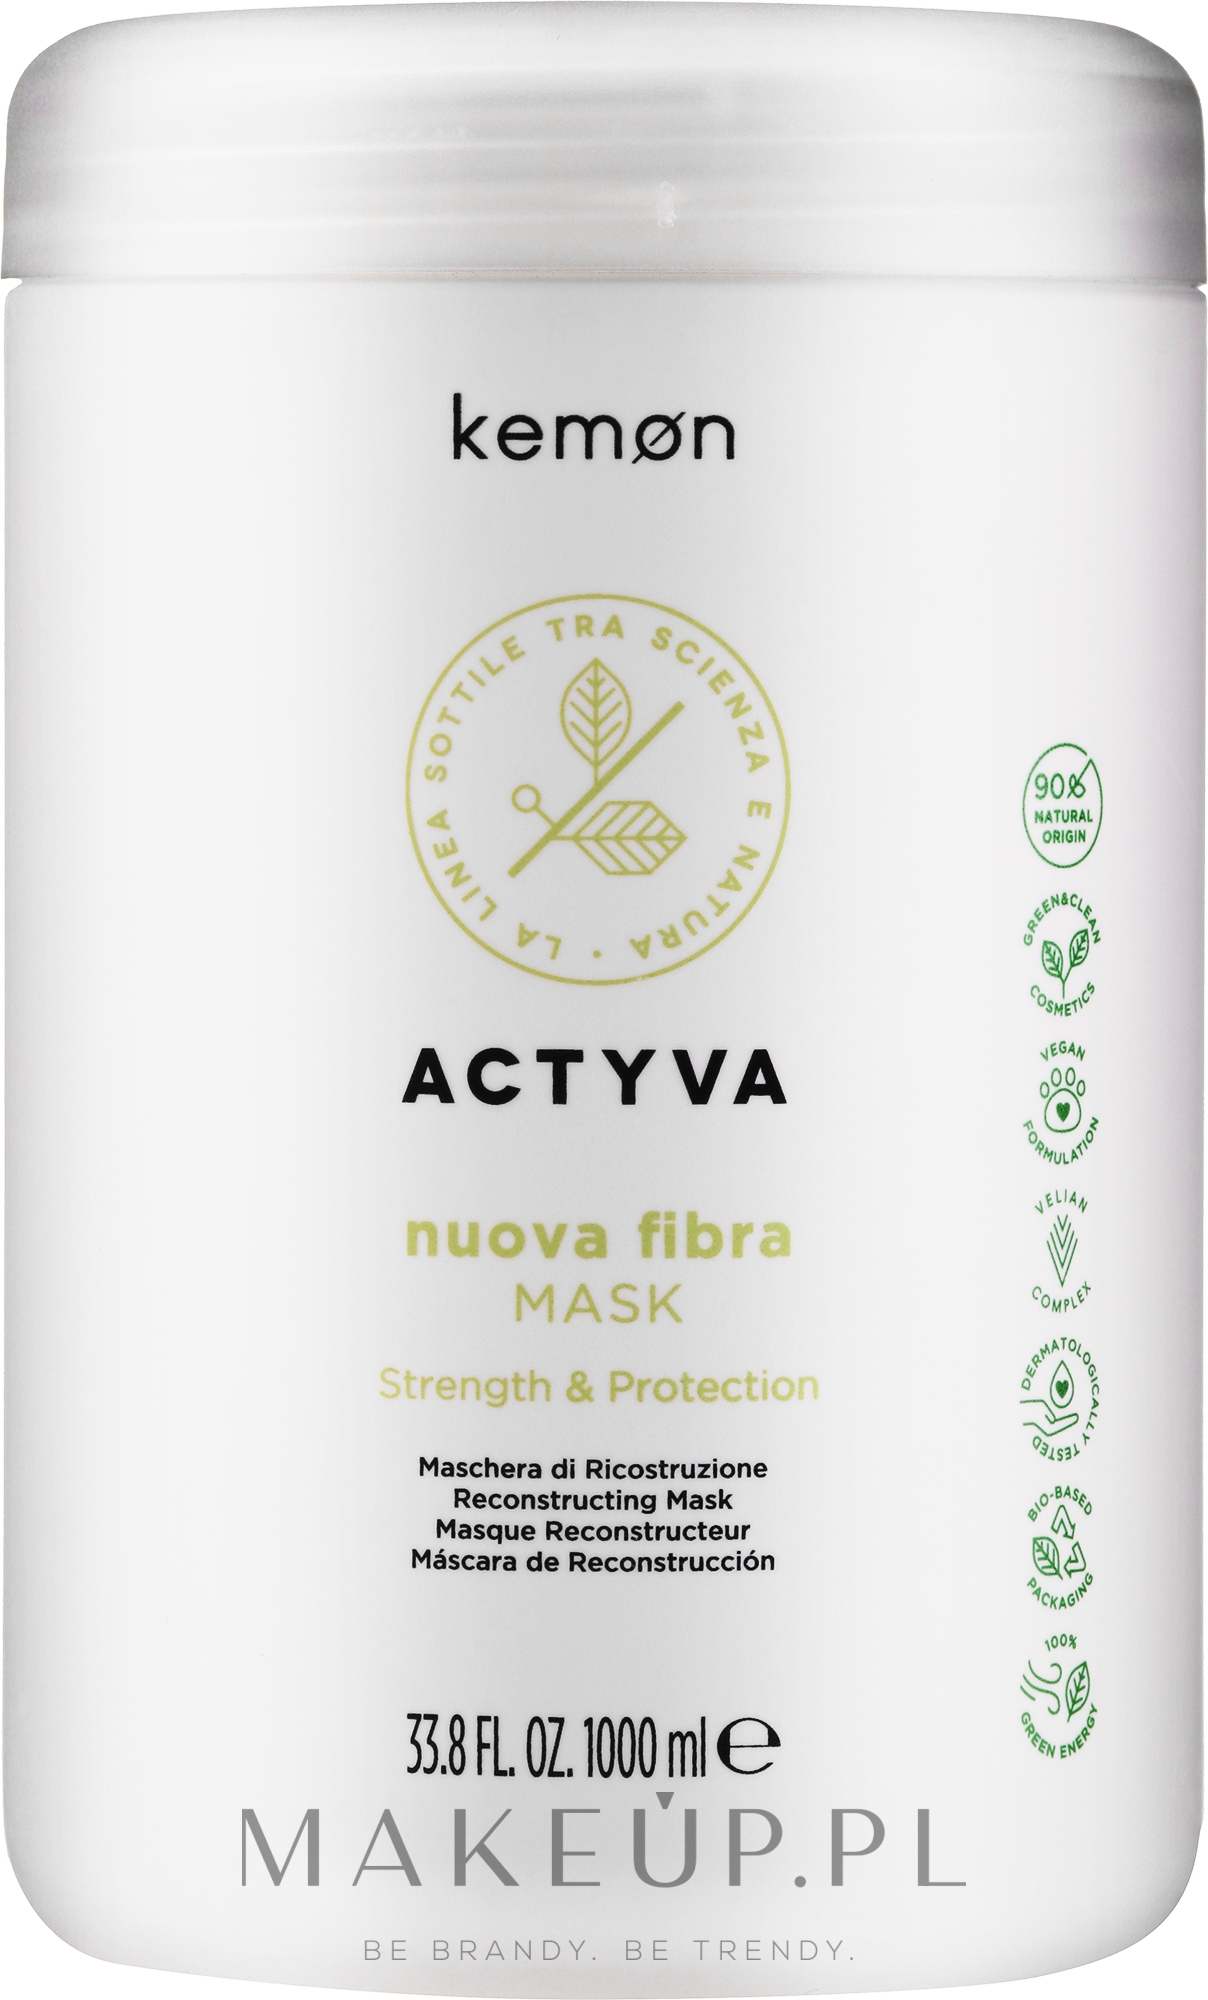 Maska do włosów słabych i zniszczonych - Kemon Actyva Nuova Fibra Mask — Zdjęcie 1000 ml